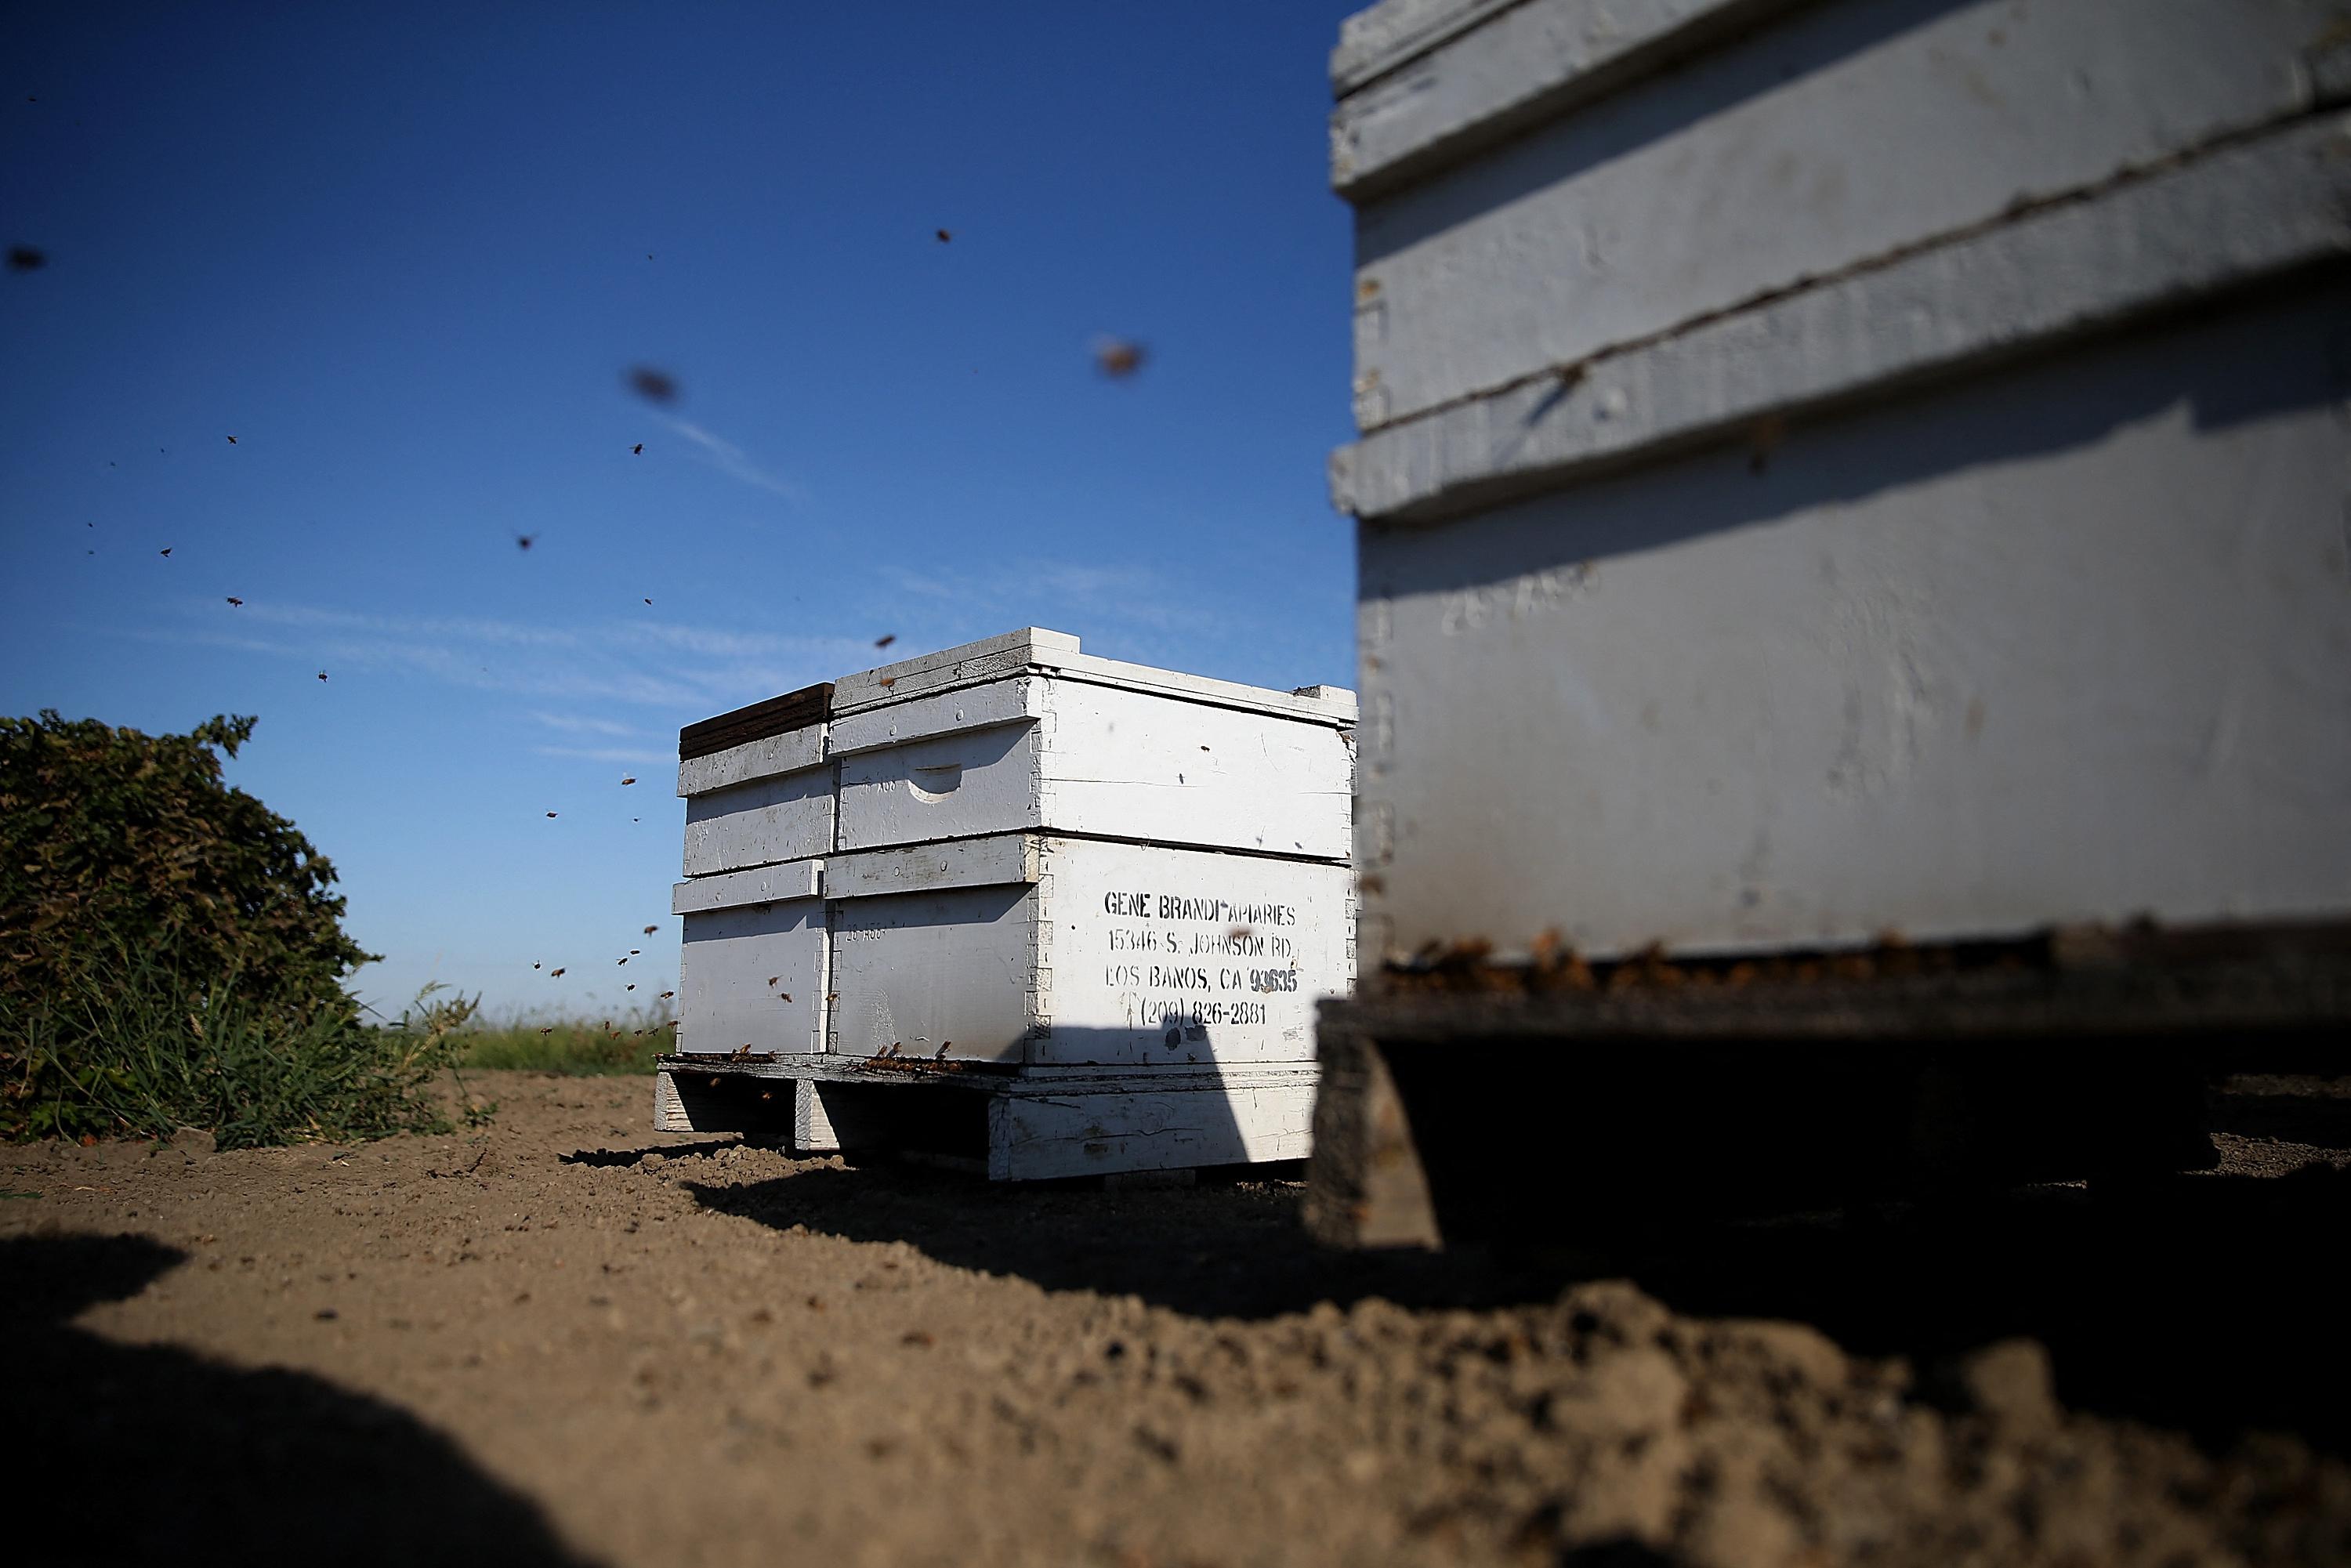 Des abeilles volent autour d'une ruche à Los Banos, en Californie, en 2014. [GETTY IMAGES NORTH AMERICA / Getty Images via AFP - JUSTIN SULLIVAN]